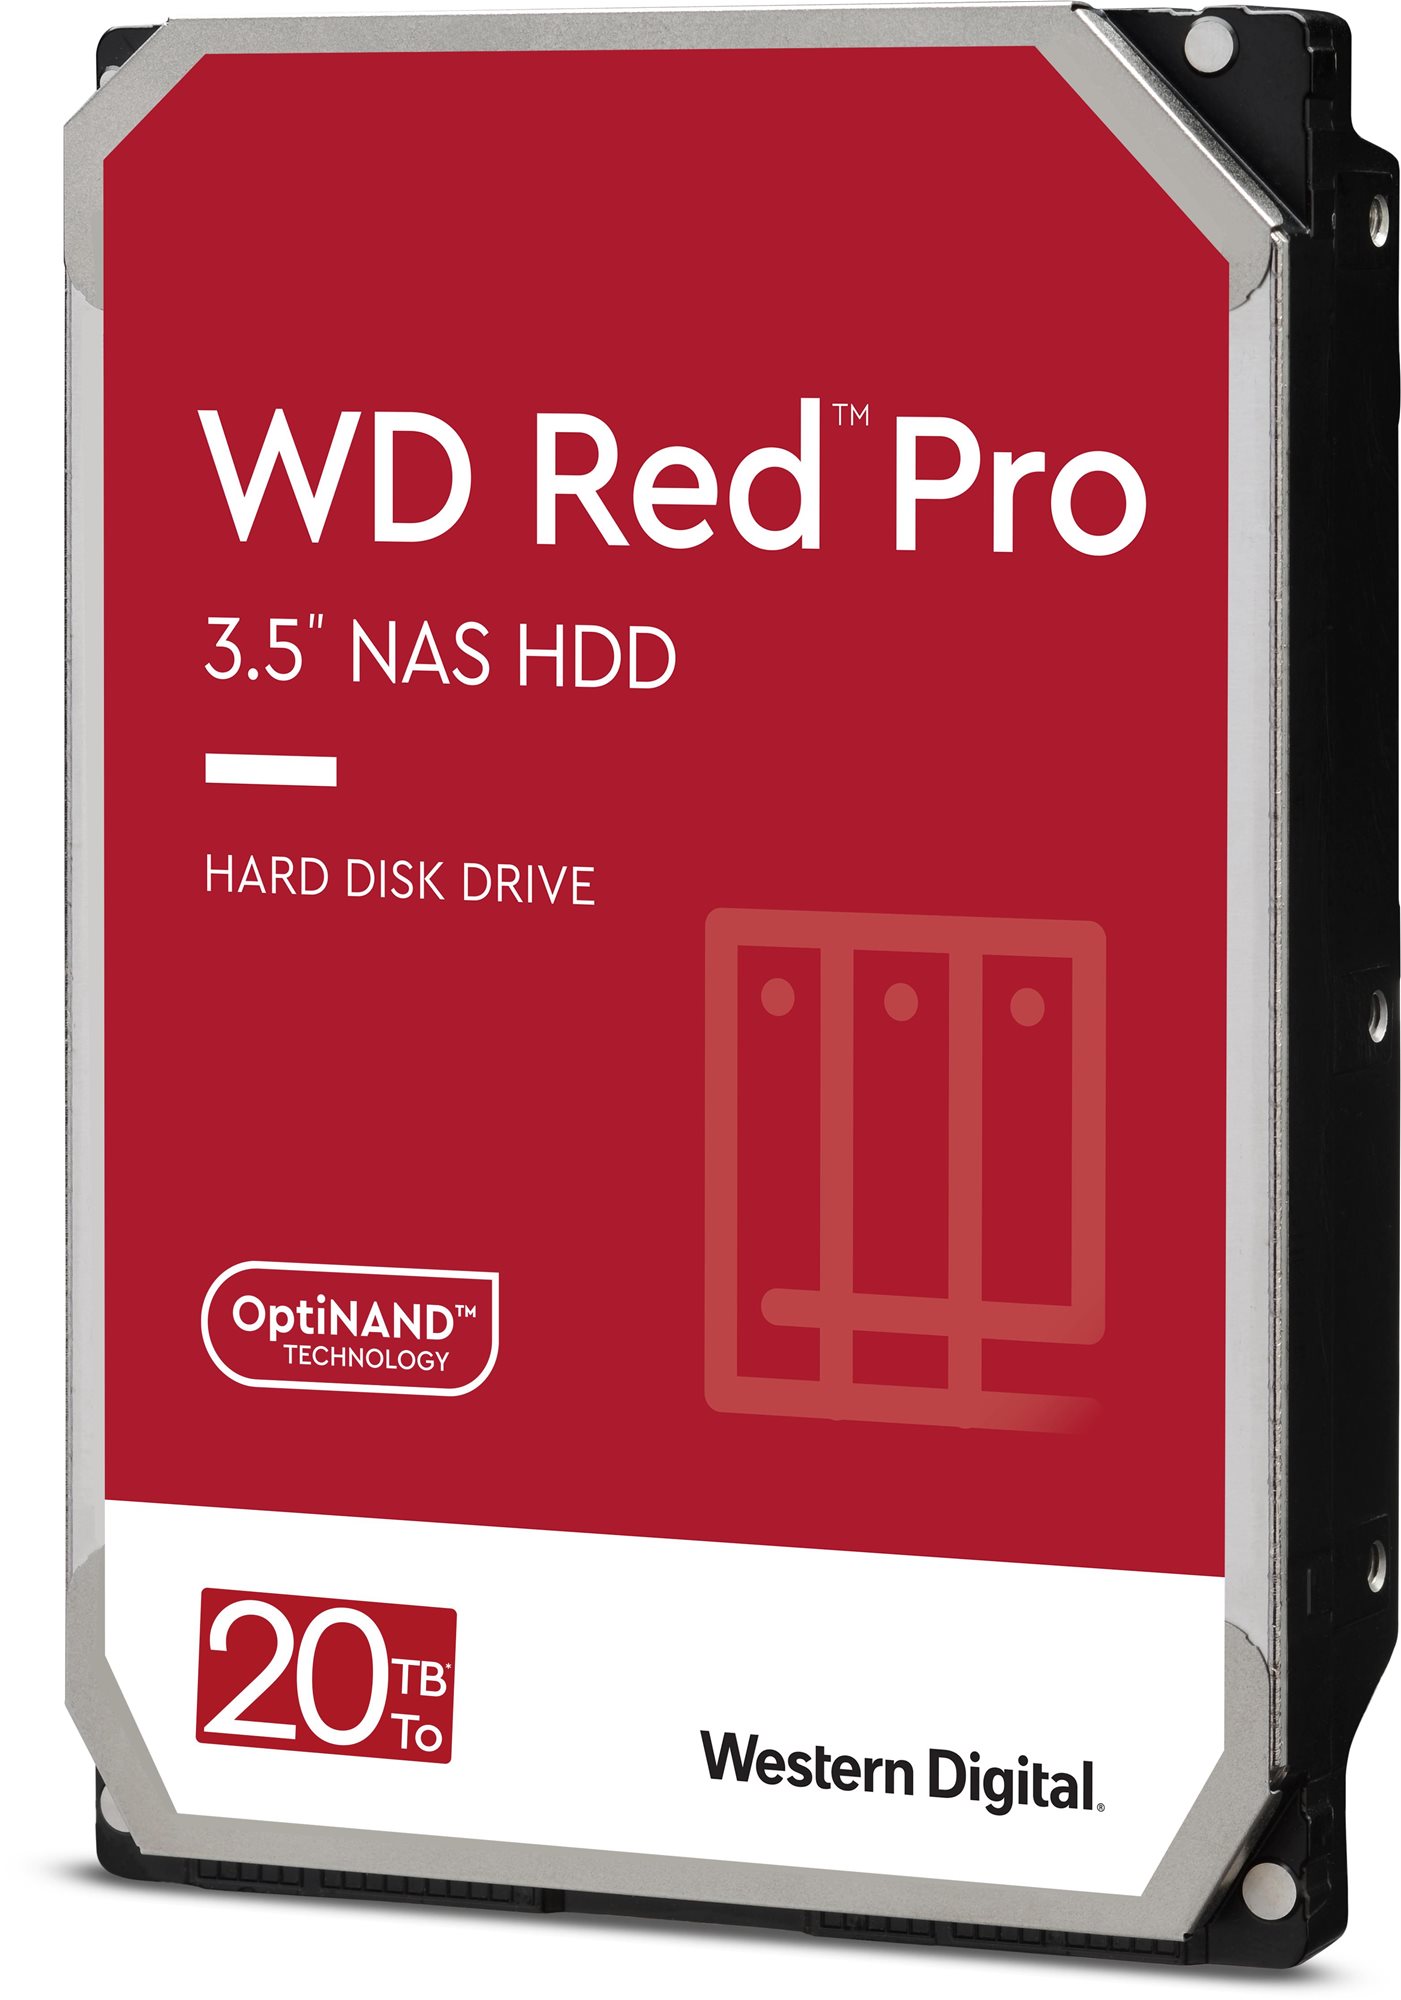 Western digital wd red pro 20 tb